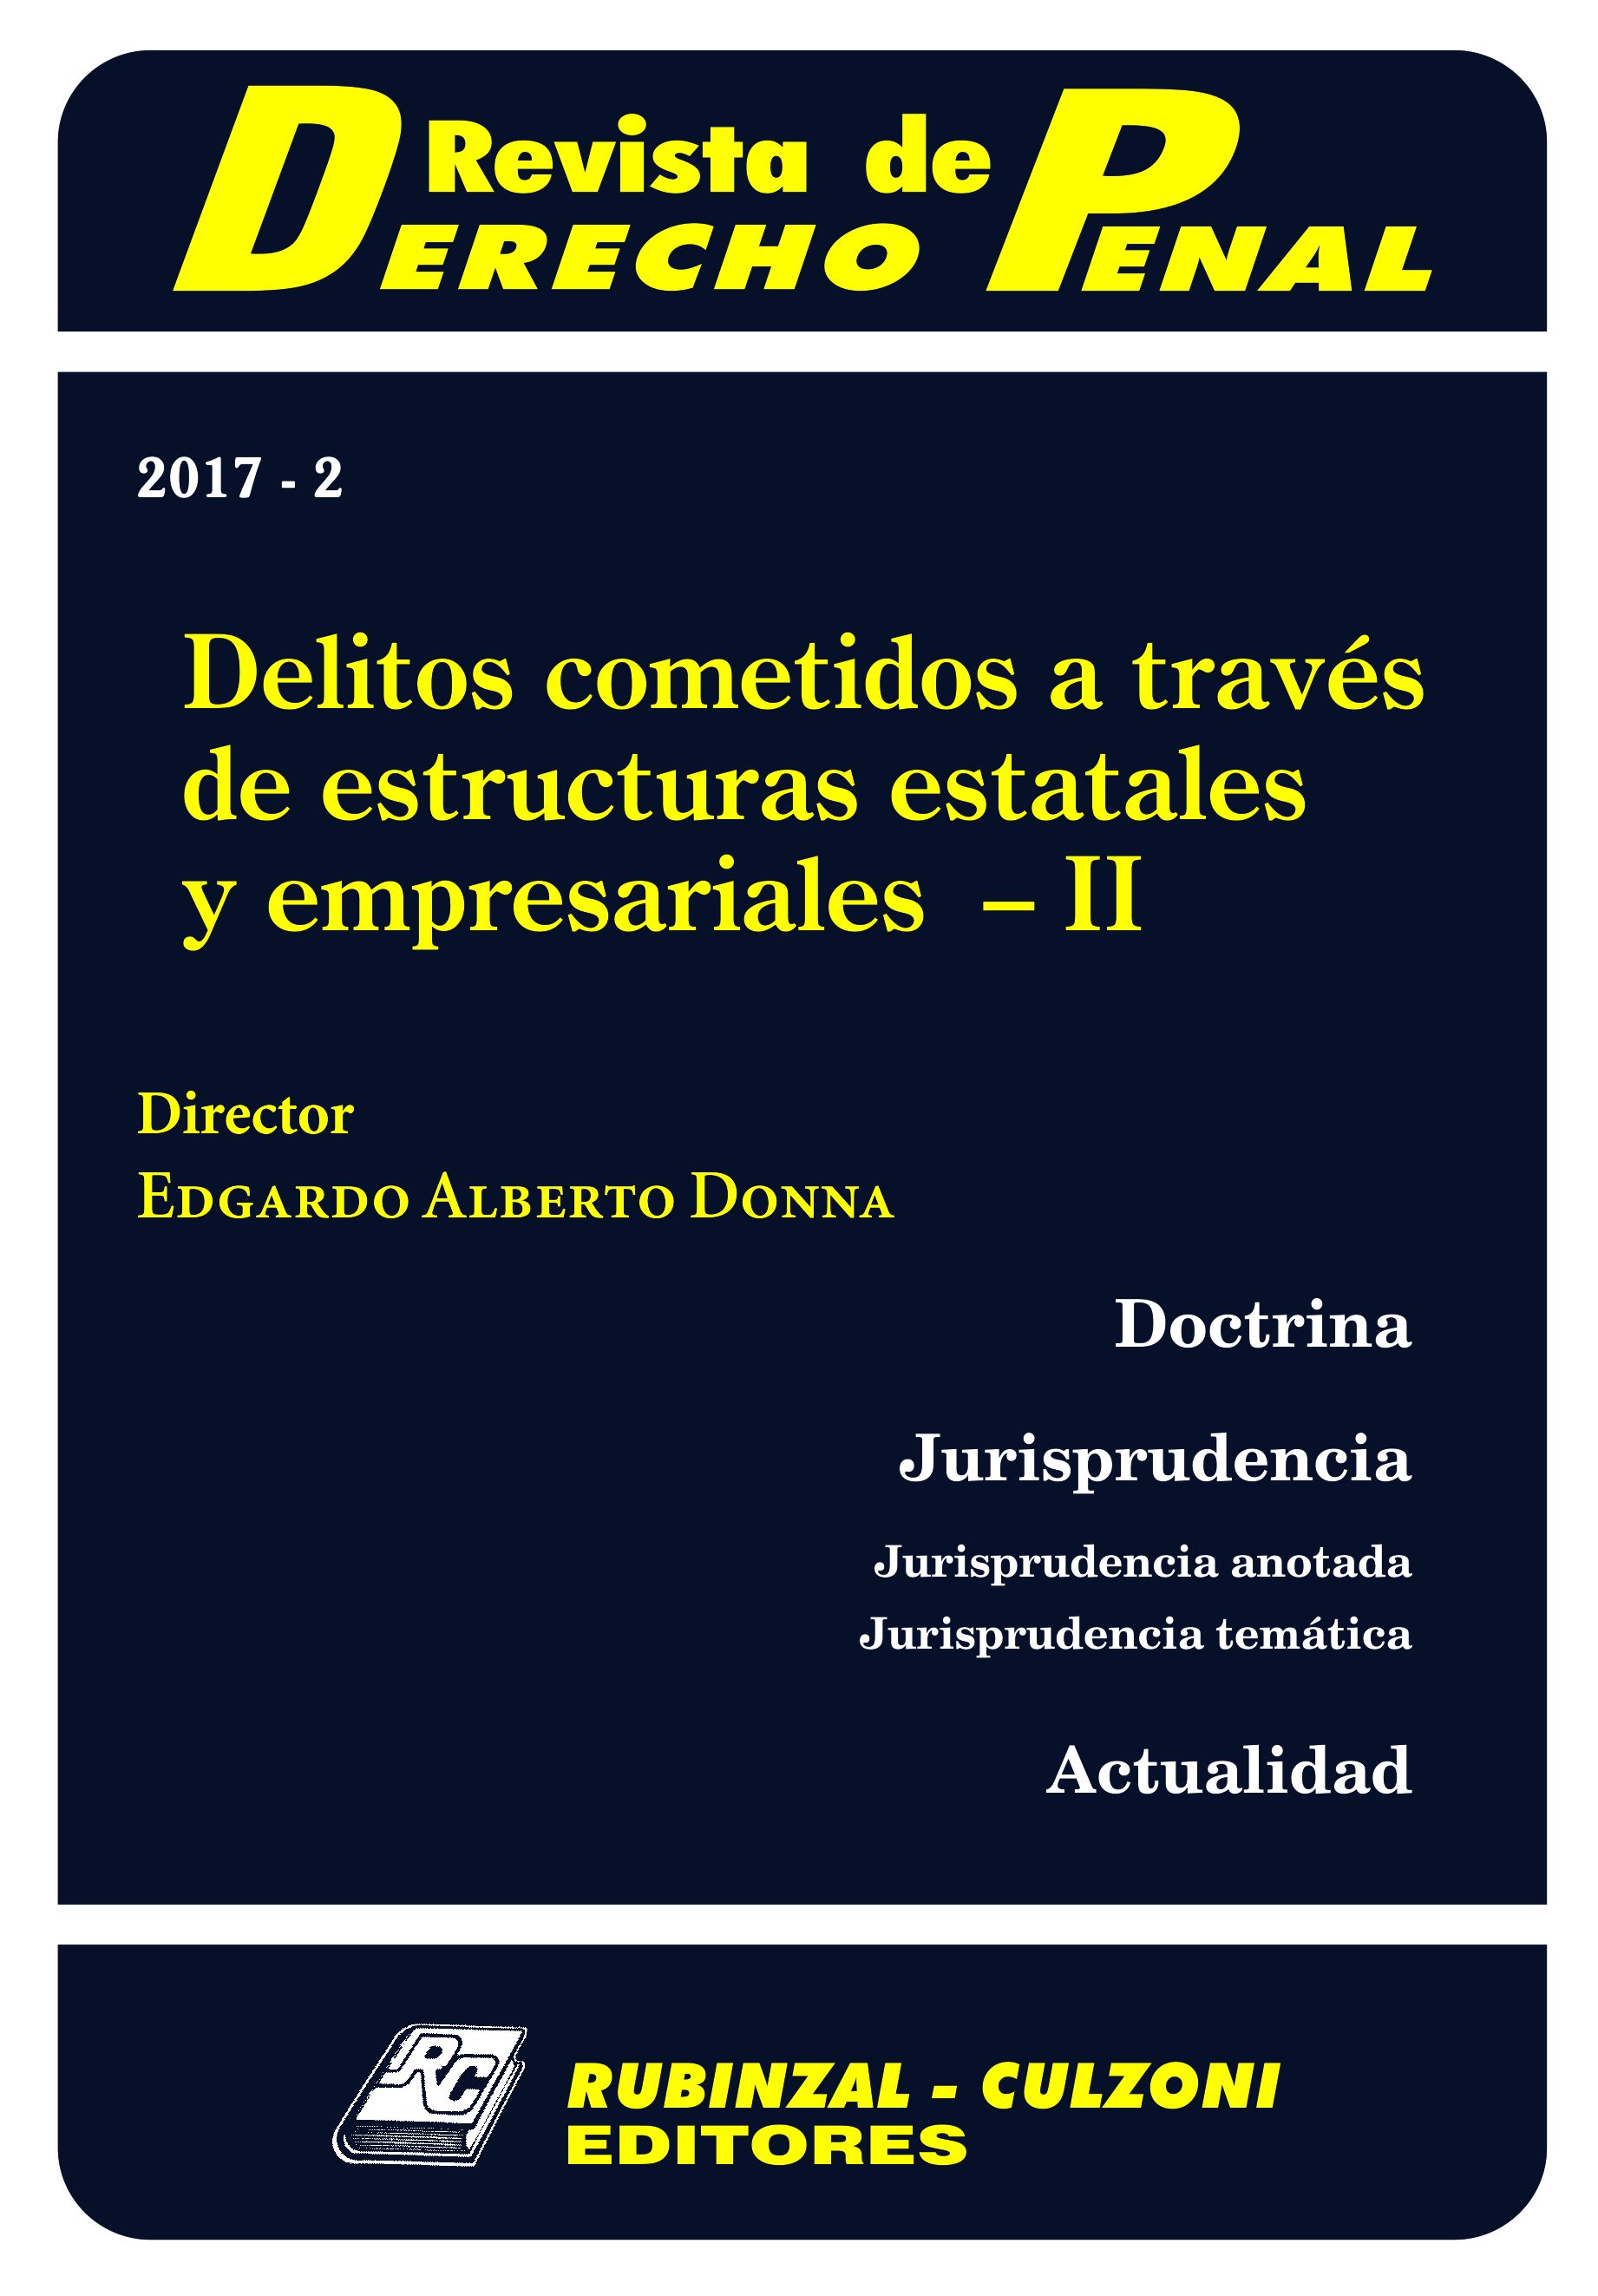 Revista de Derecho Penal - Delitos cometidos a través de estructuras estatales y empresariales - II